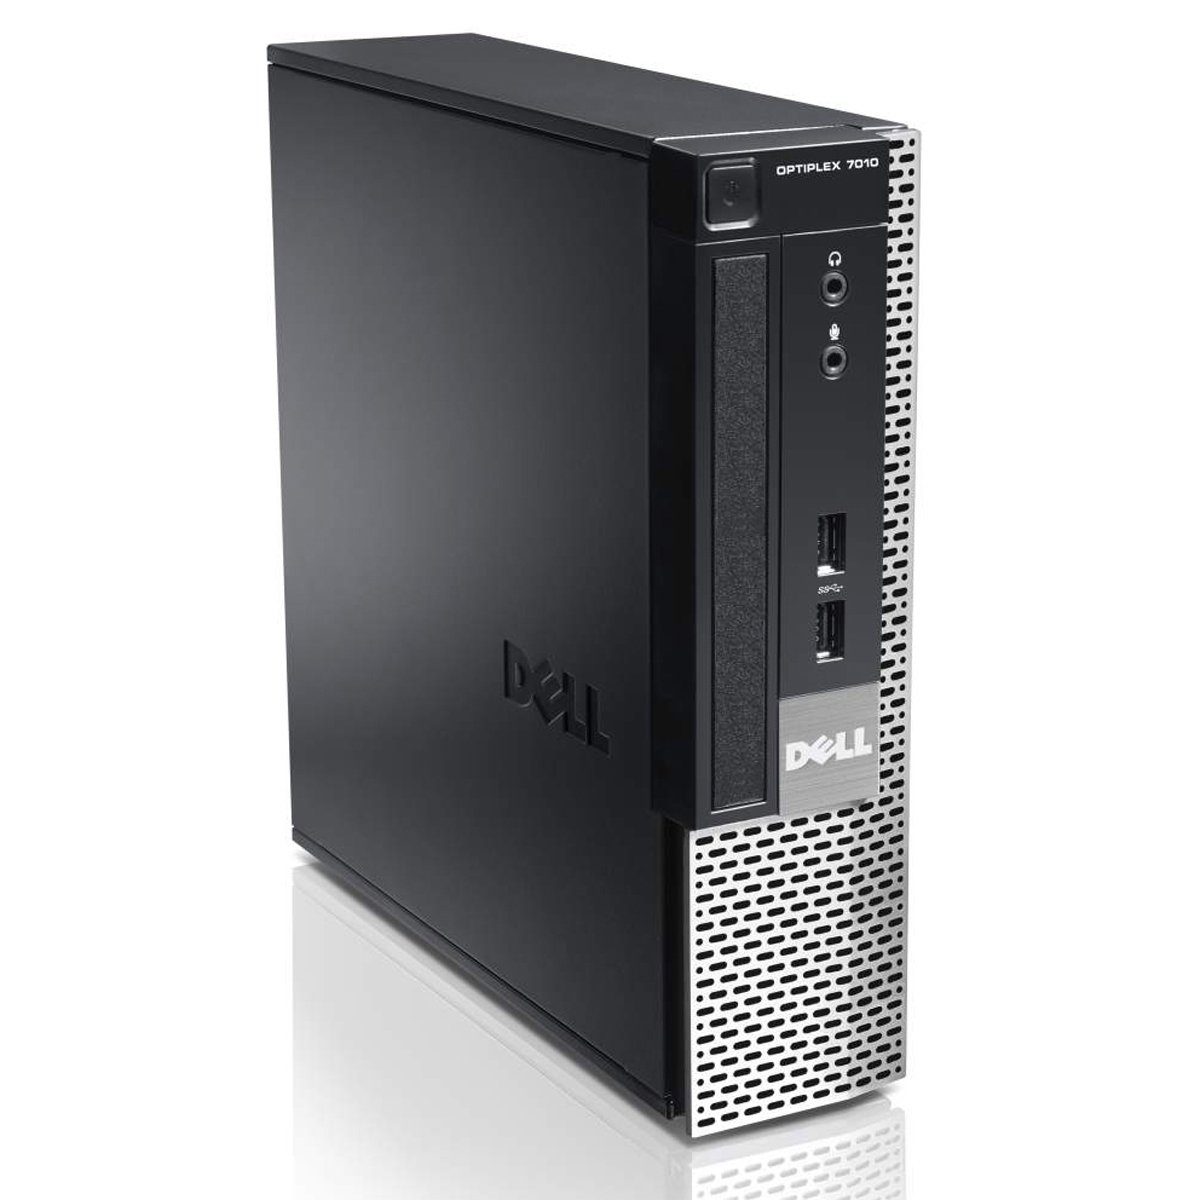 Dell Optiplex 7010 USFF Intel Core i7 3.40 GHz 8Gb Ram 1TB W10P | eBay